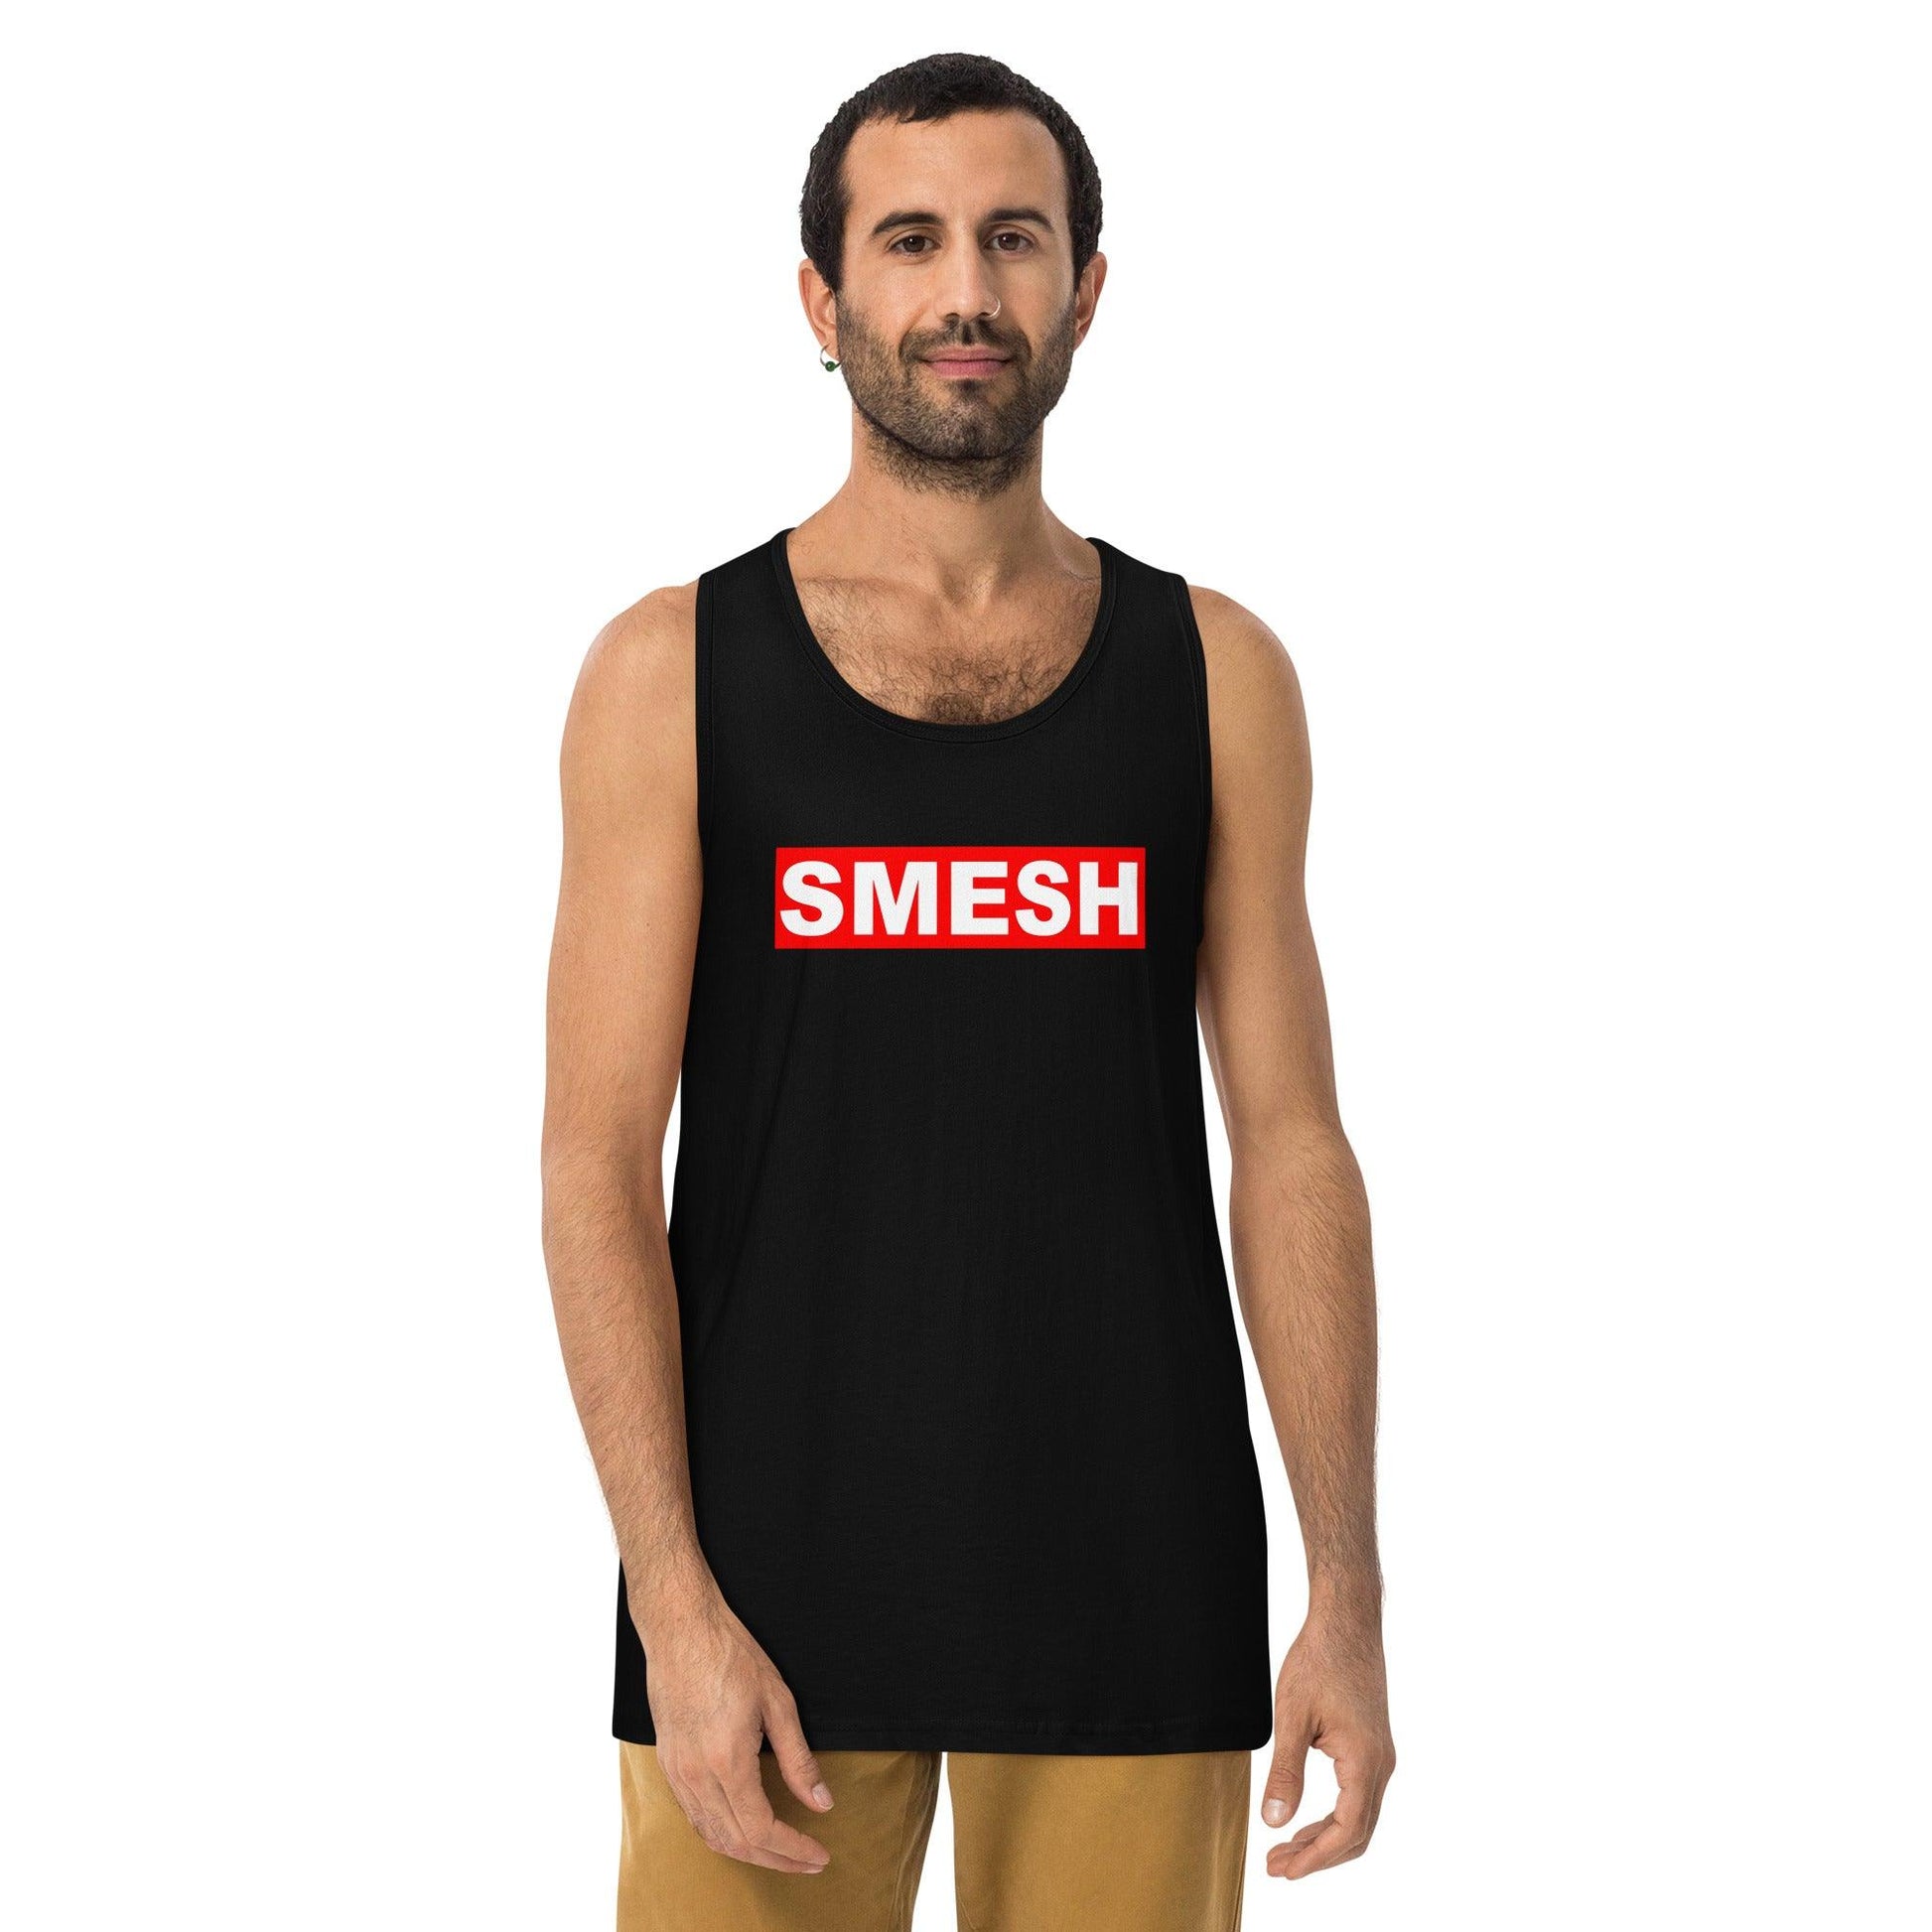 SMESH Men’s Premium Tank Top - Violent Art Shop